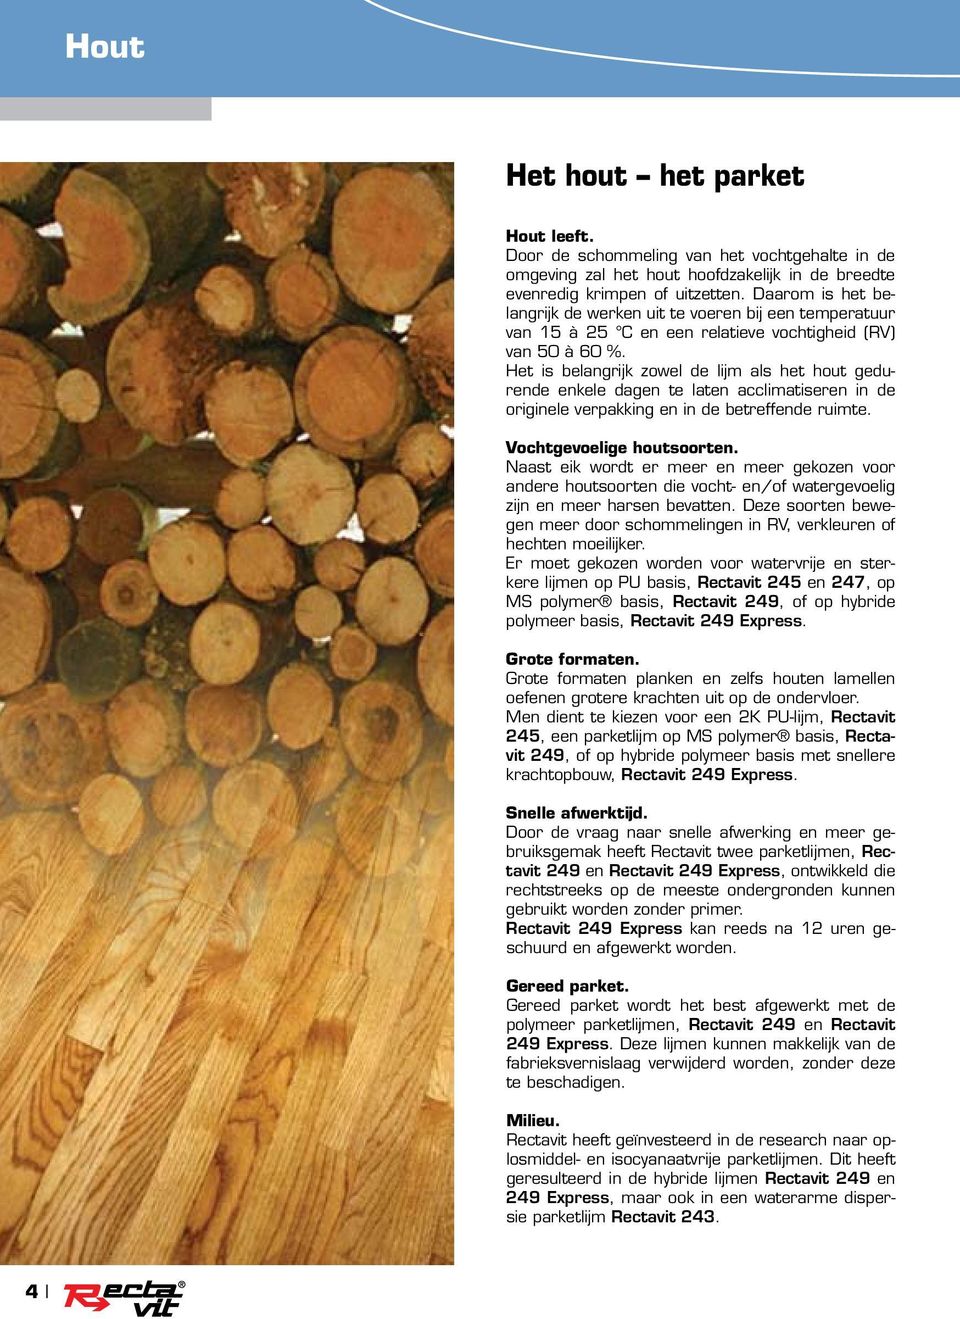 Het is belangrijk zowel de lijm als het hout gedurende enkele dagen te laten acclimatiseren in de originele verpakking en in de betreffende ruimte. Vochtgevoelige houtsoorten.